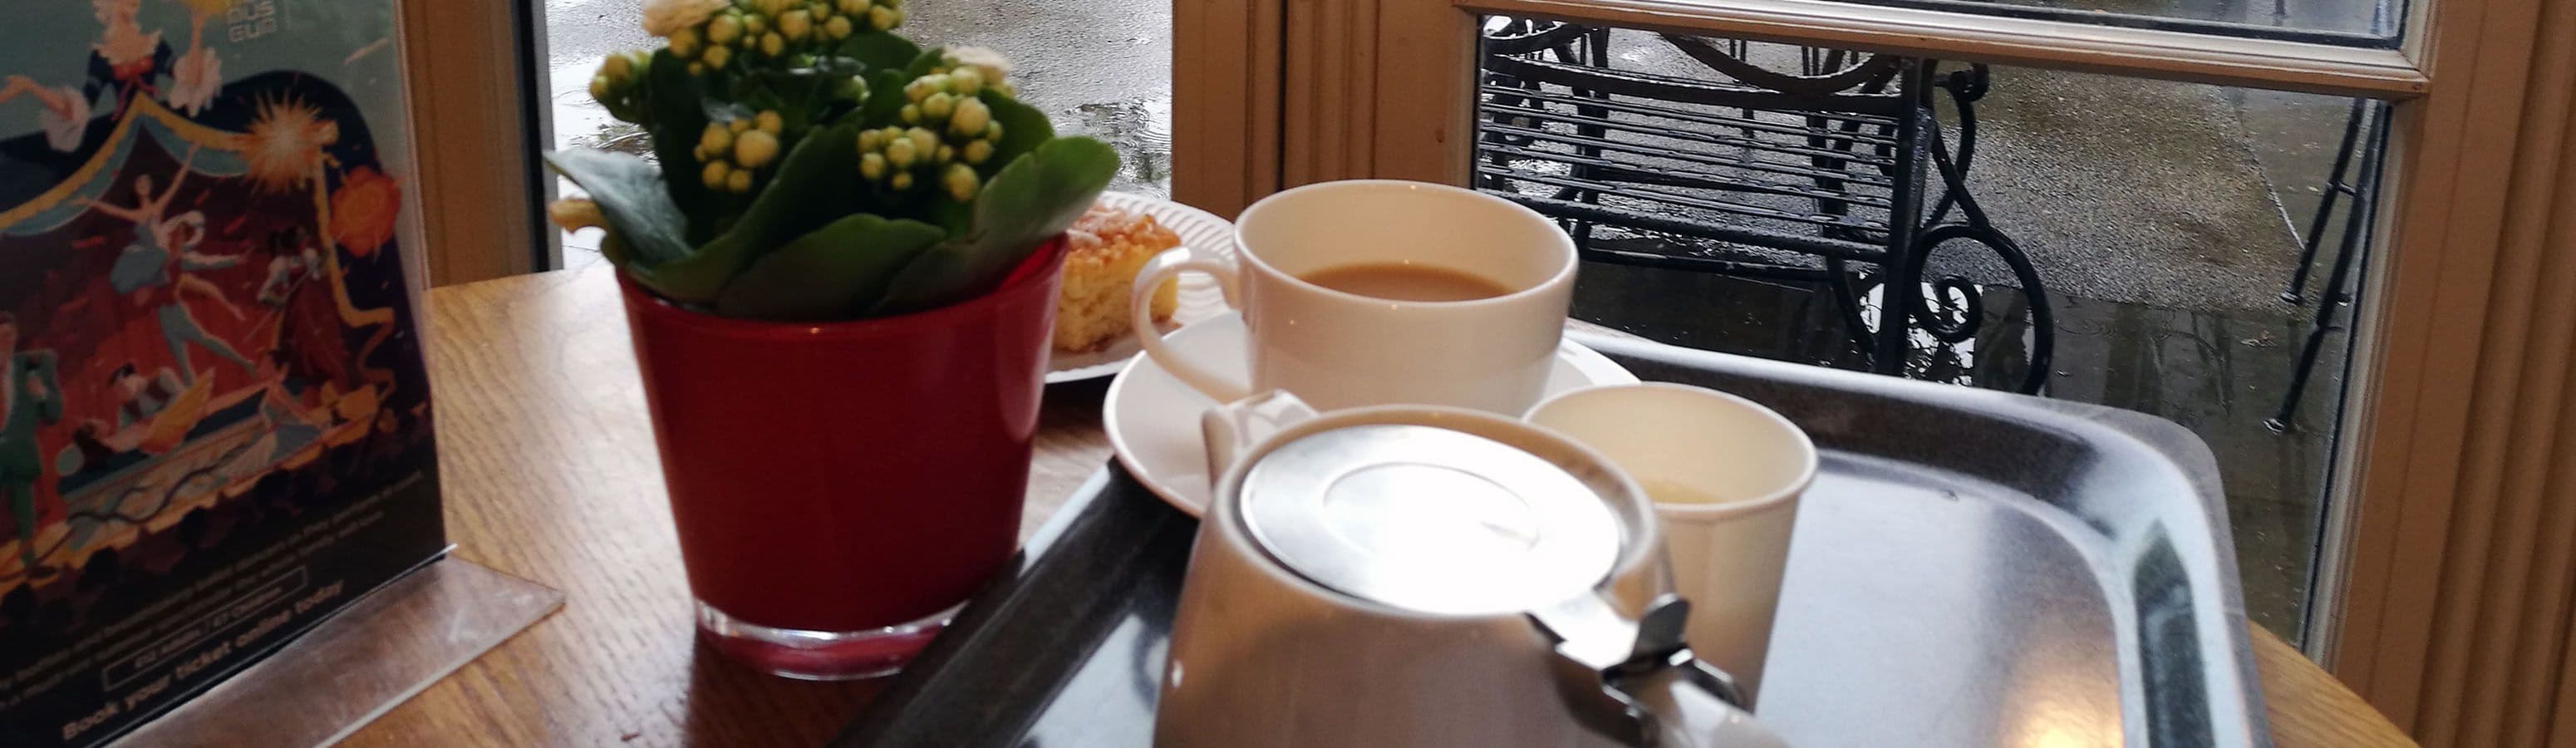 Чай в пять и дальше достопримечательностей Лондона